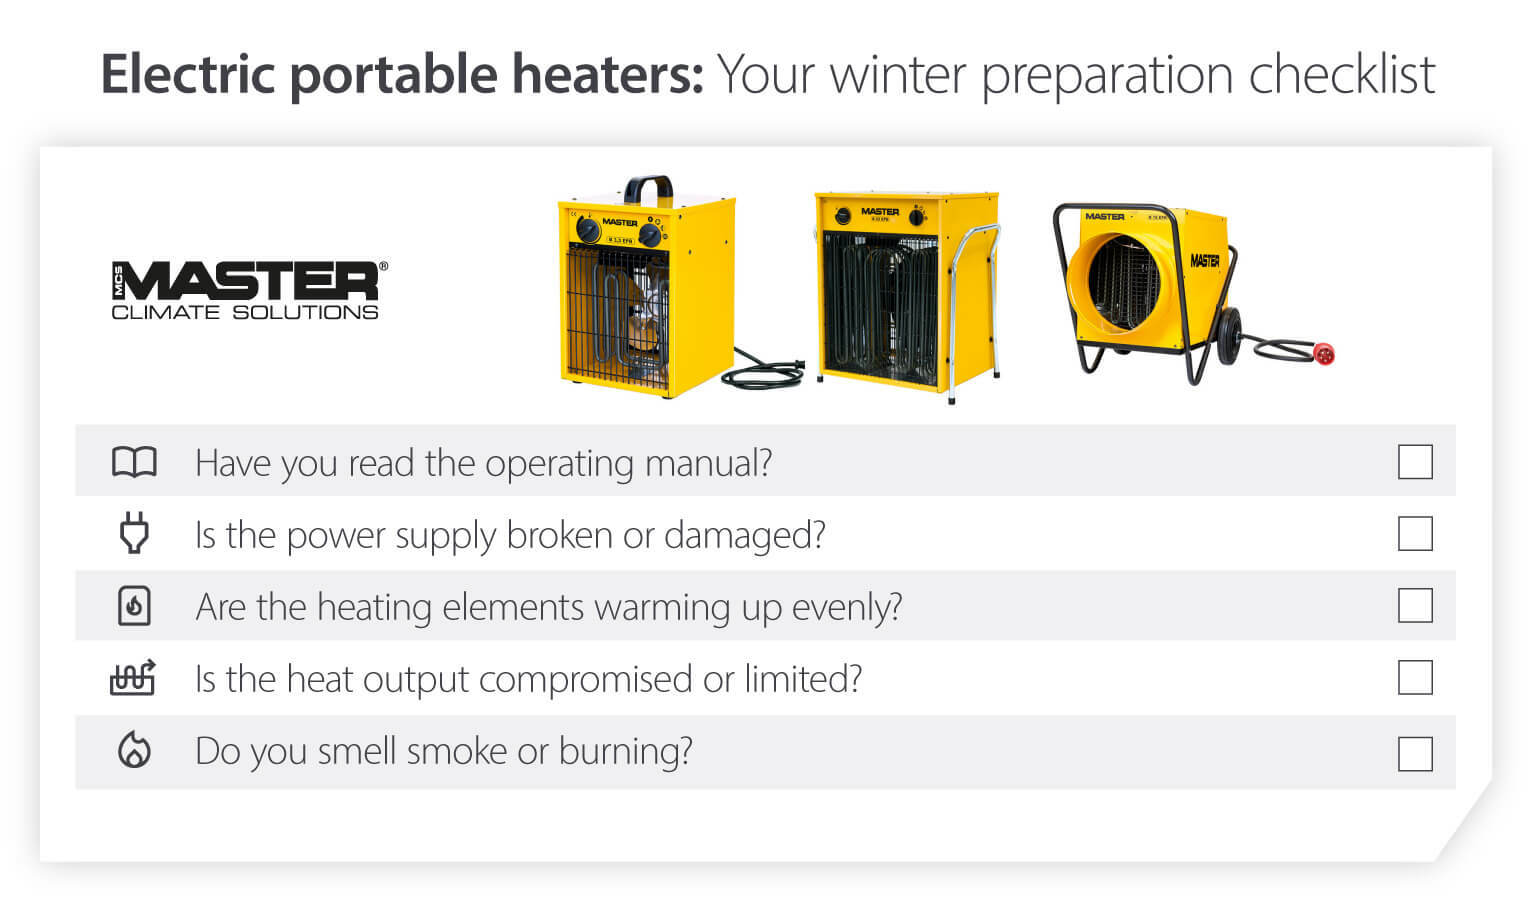 Vinterchecklista för portabla elvärmare – förbereda värmaren inför kalla temperaturer – Infografik